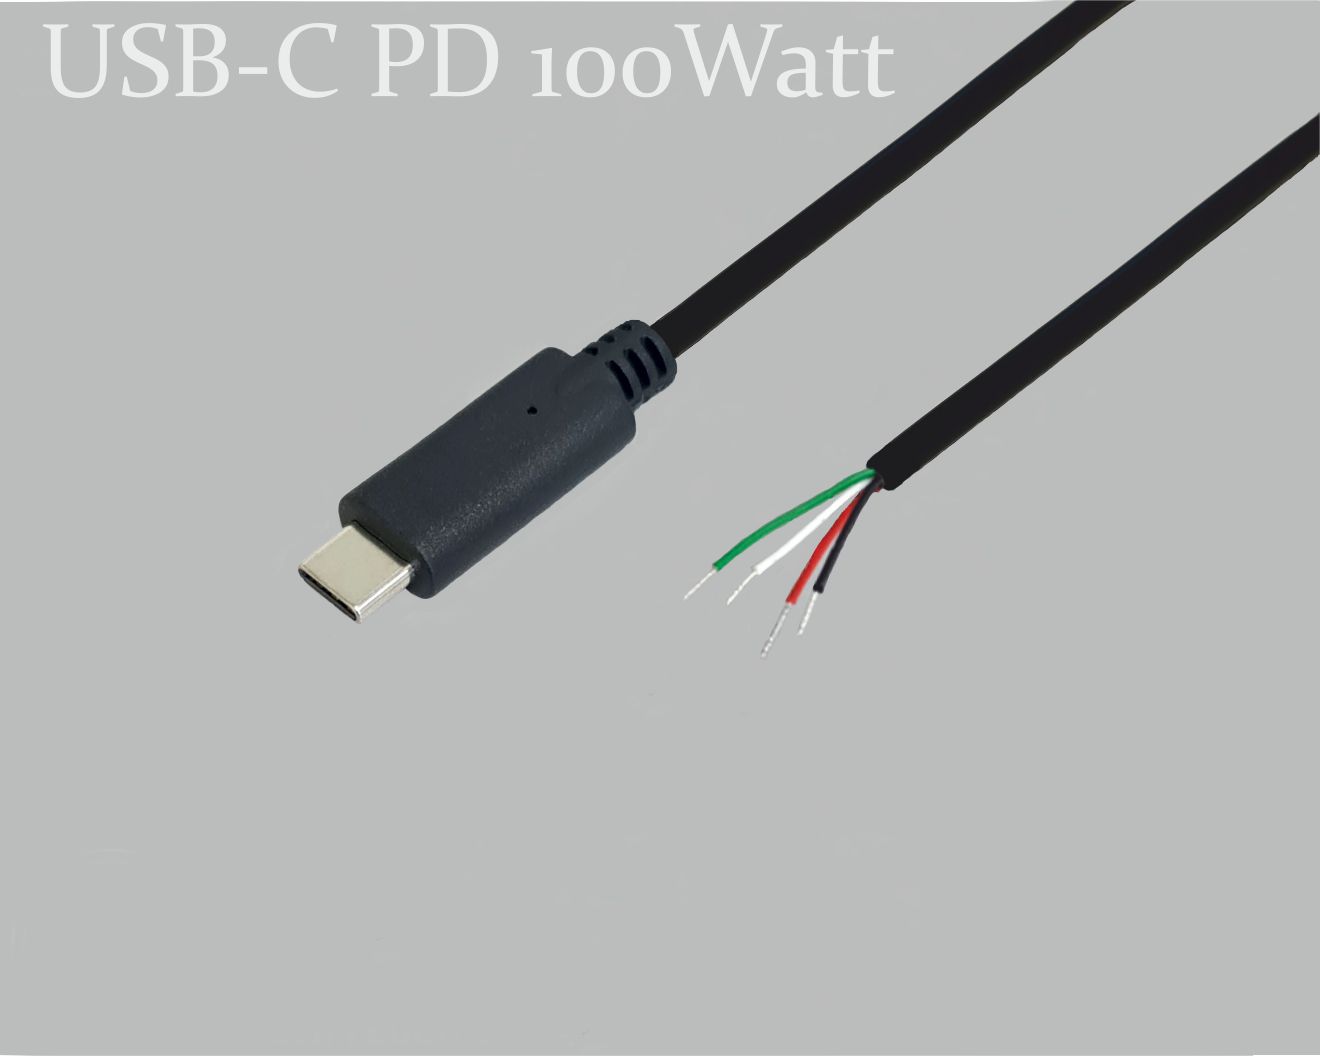 USB-C Anschlusskabel, PD Power Delivery 100W(5A/20V) mit E-Mark Chip zum schnell laden, USB-C-Stecker gerade auf offenes Ende, 2,0m, schwarz, abgemantelt und verzinnt